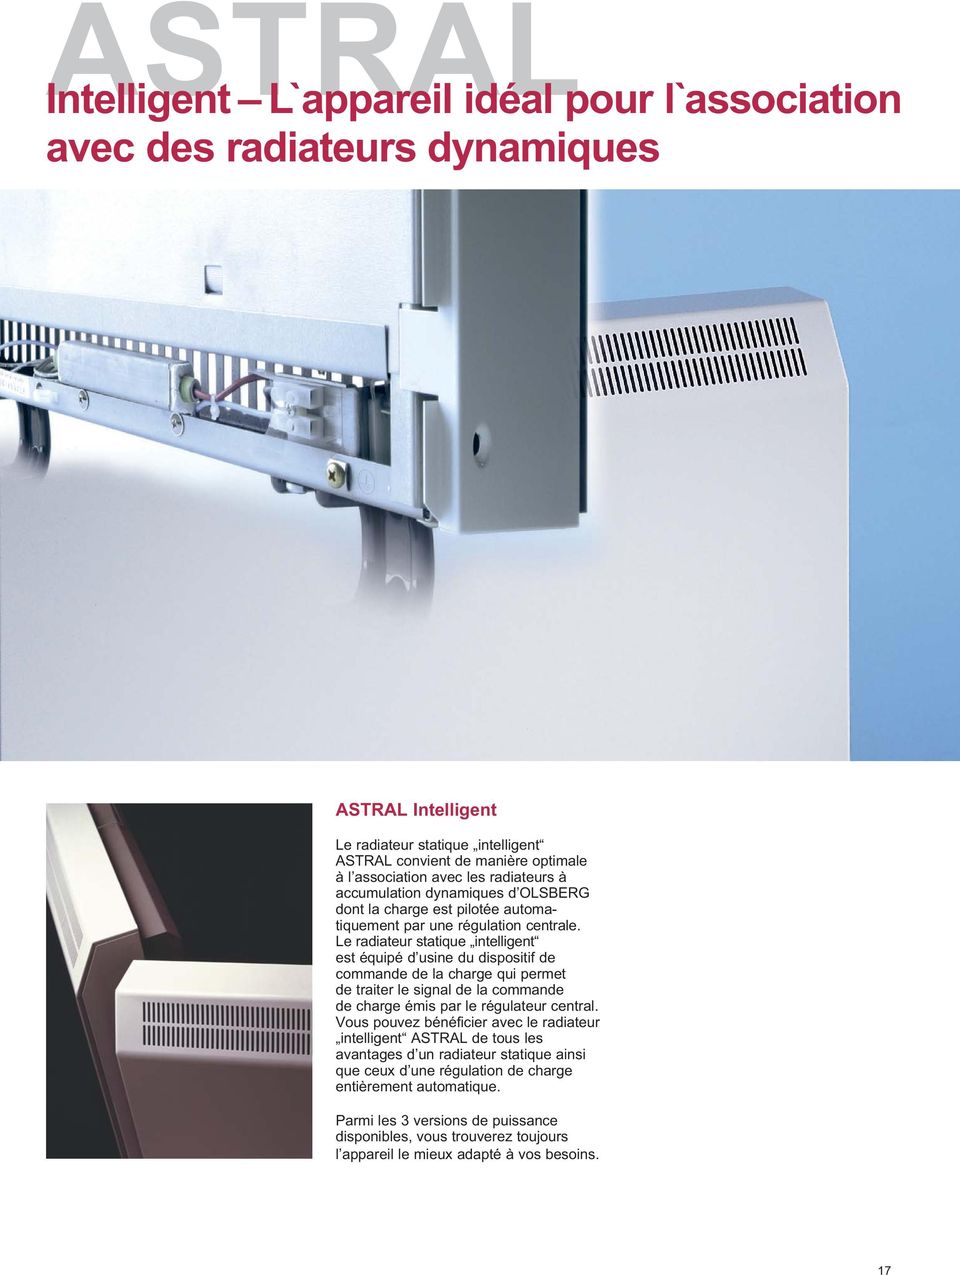 Le radiateur statique intelligent est équipé d usine du dispositif de commande de la charge qui permet de traiter le signal de la commande de charge émis par le régulateur central.